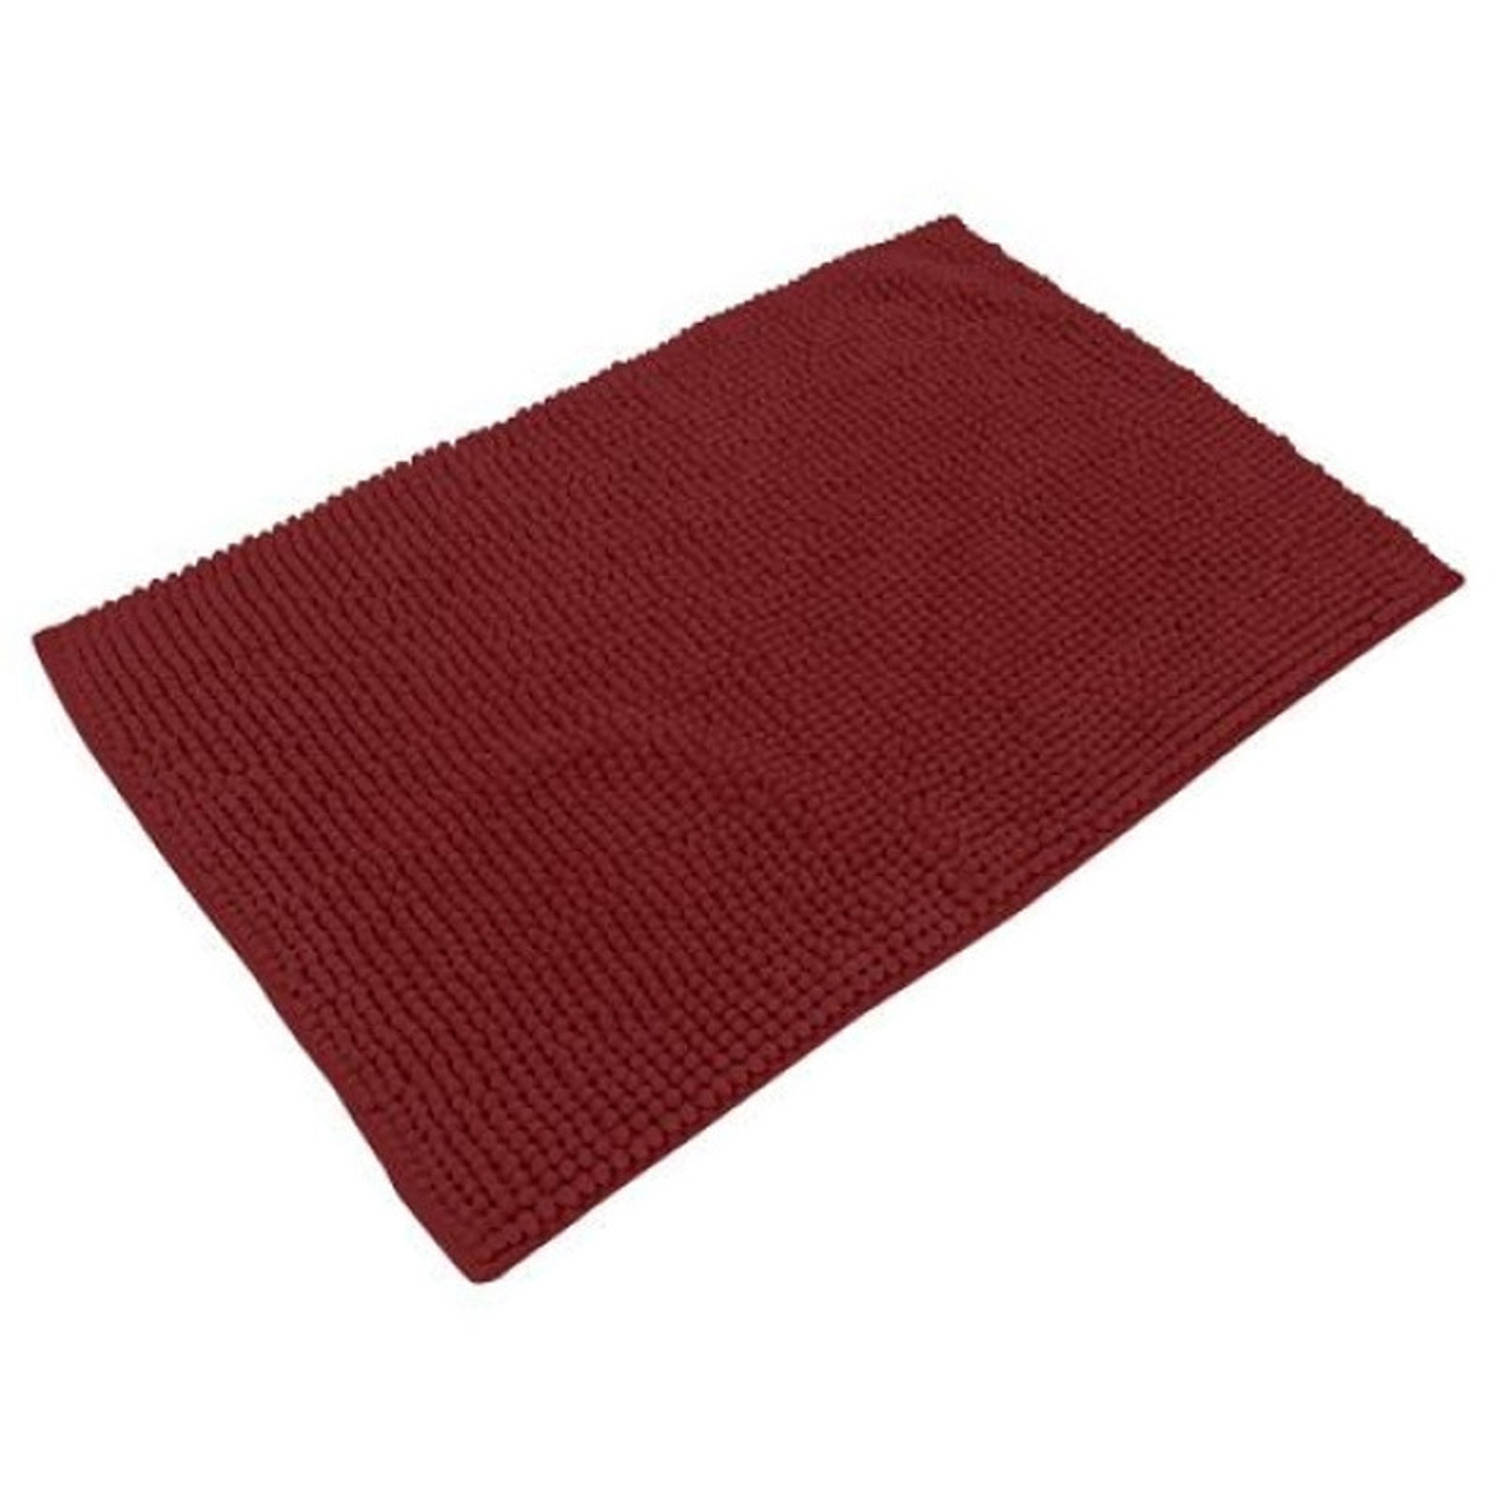 Urban Living Badkamerkleedje/badmat tapijt - voor op de vloer - donkerrood - 50 x 80 cm - anti slip